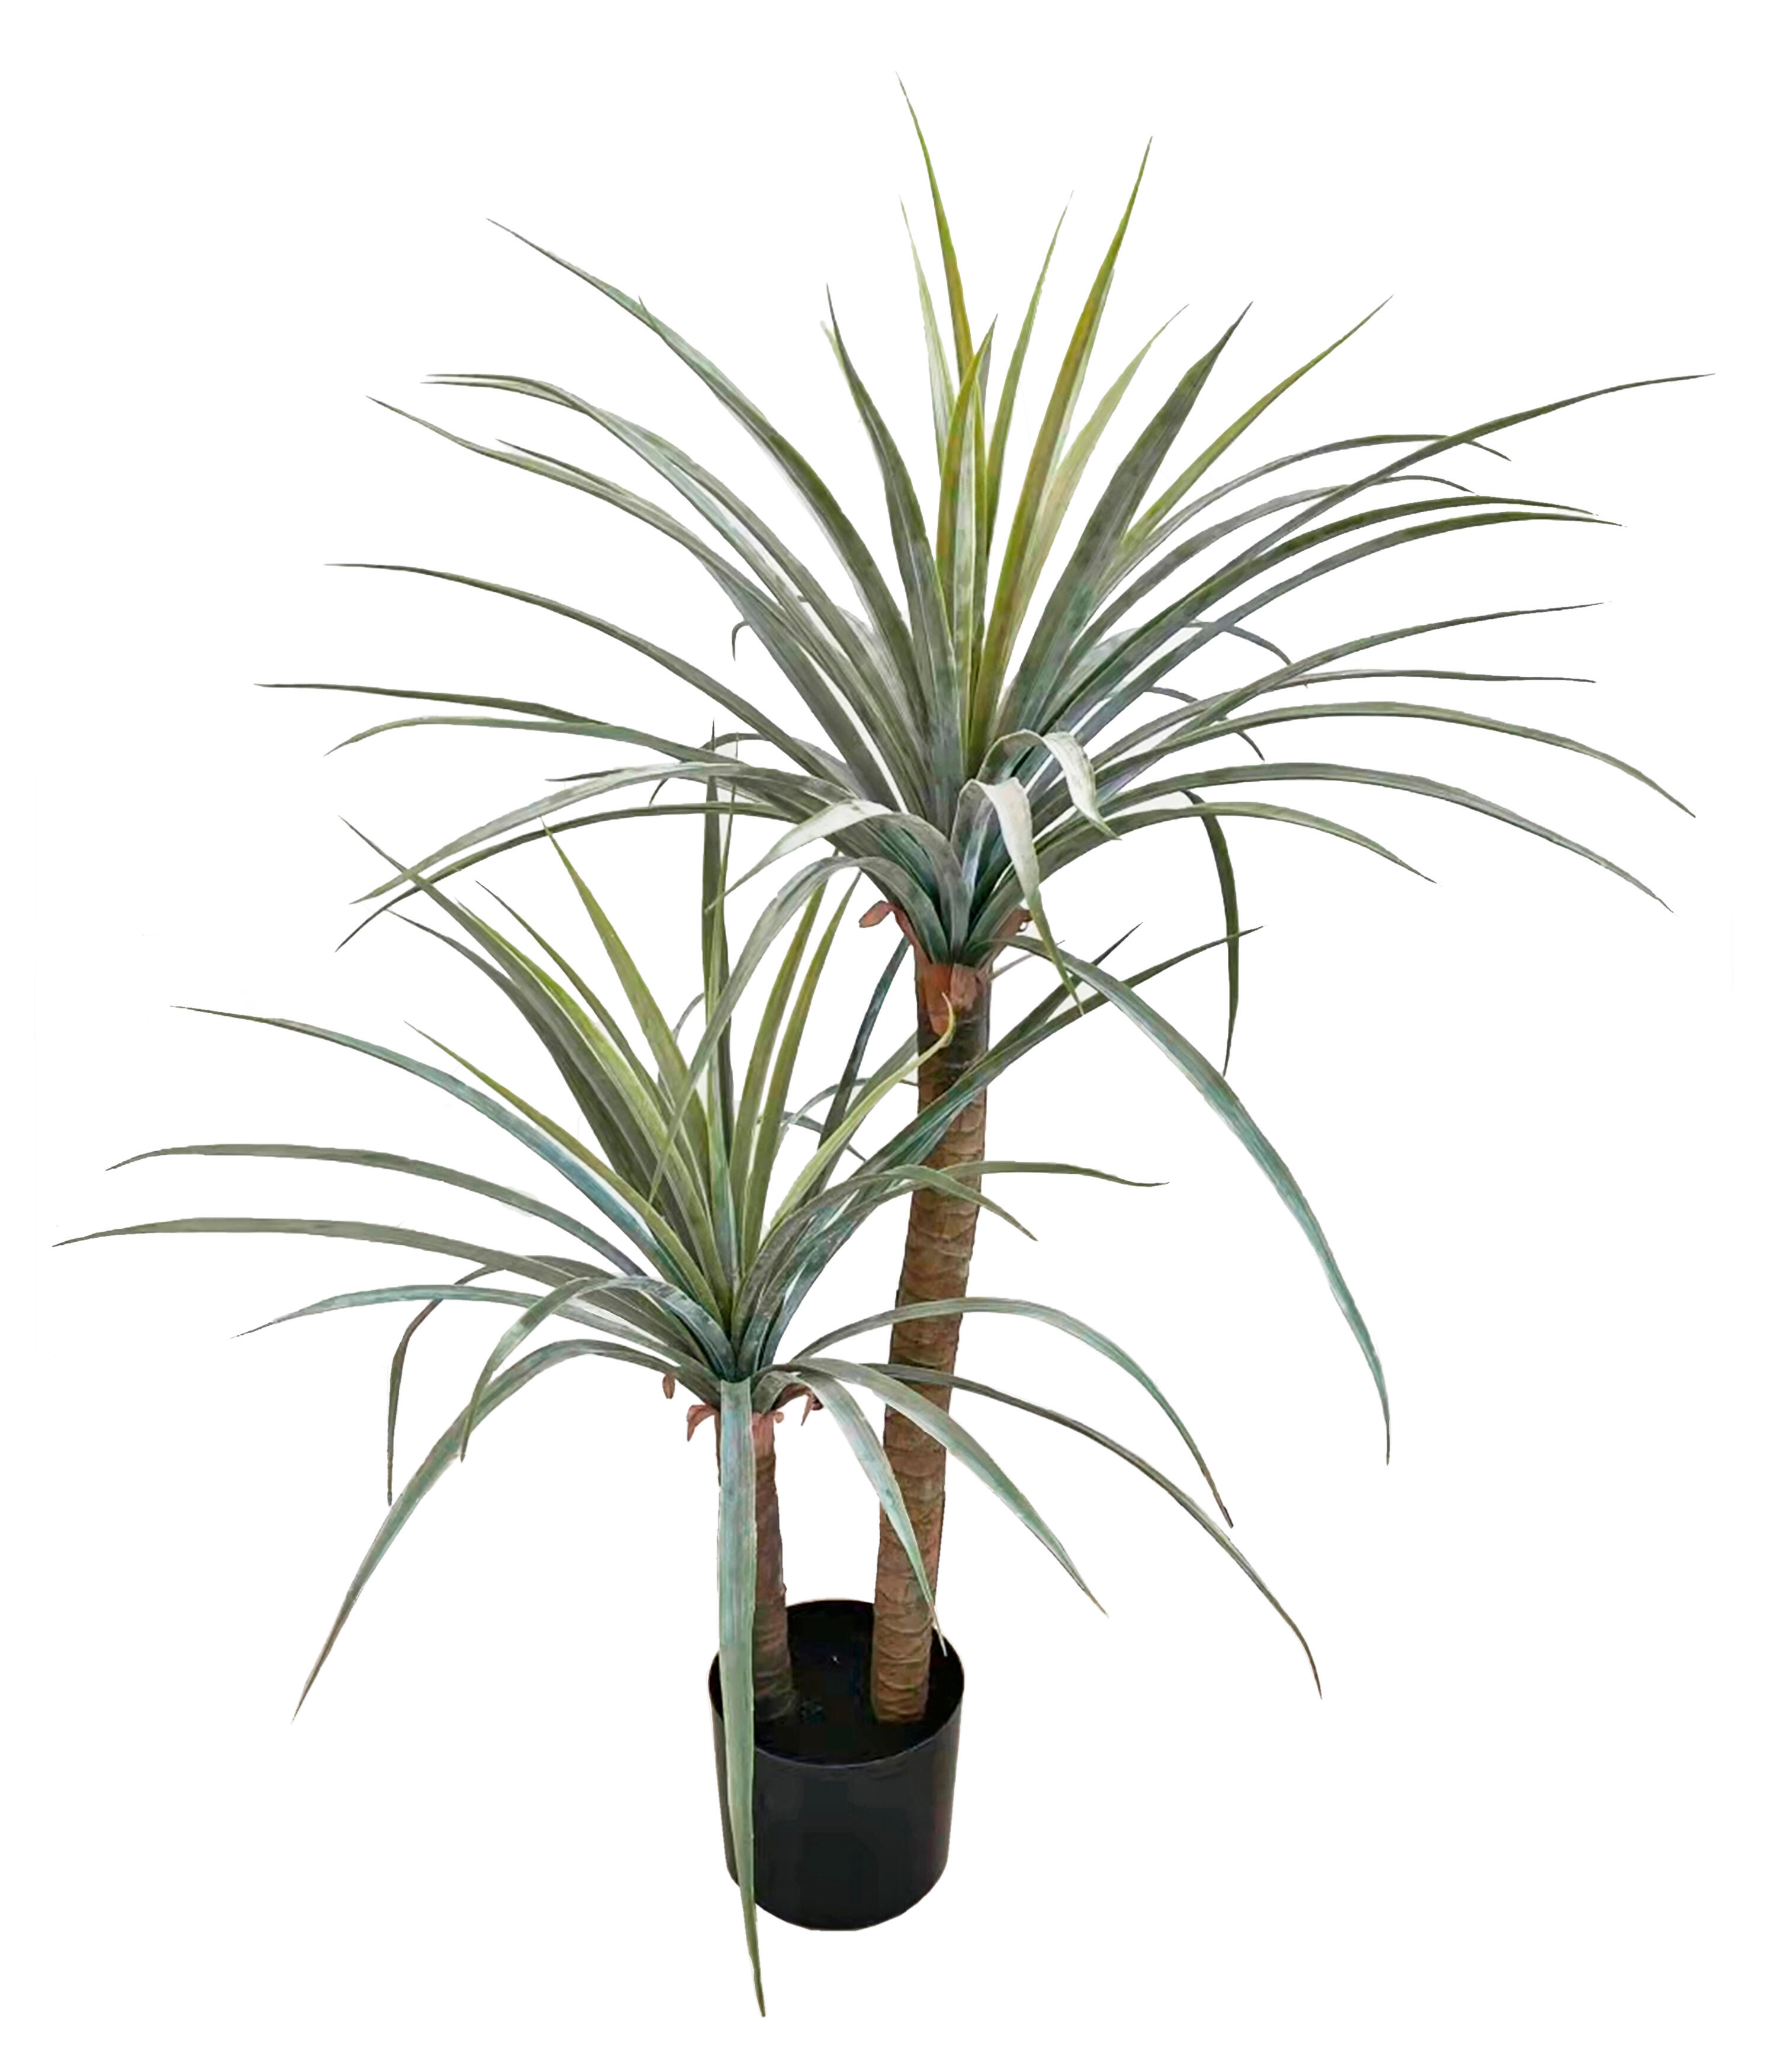 Planta artificial yuca vertical de 110 cm de altura en maceta de 20 cm